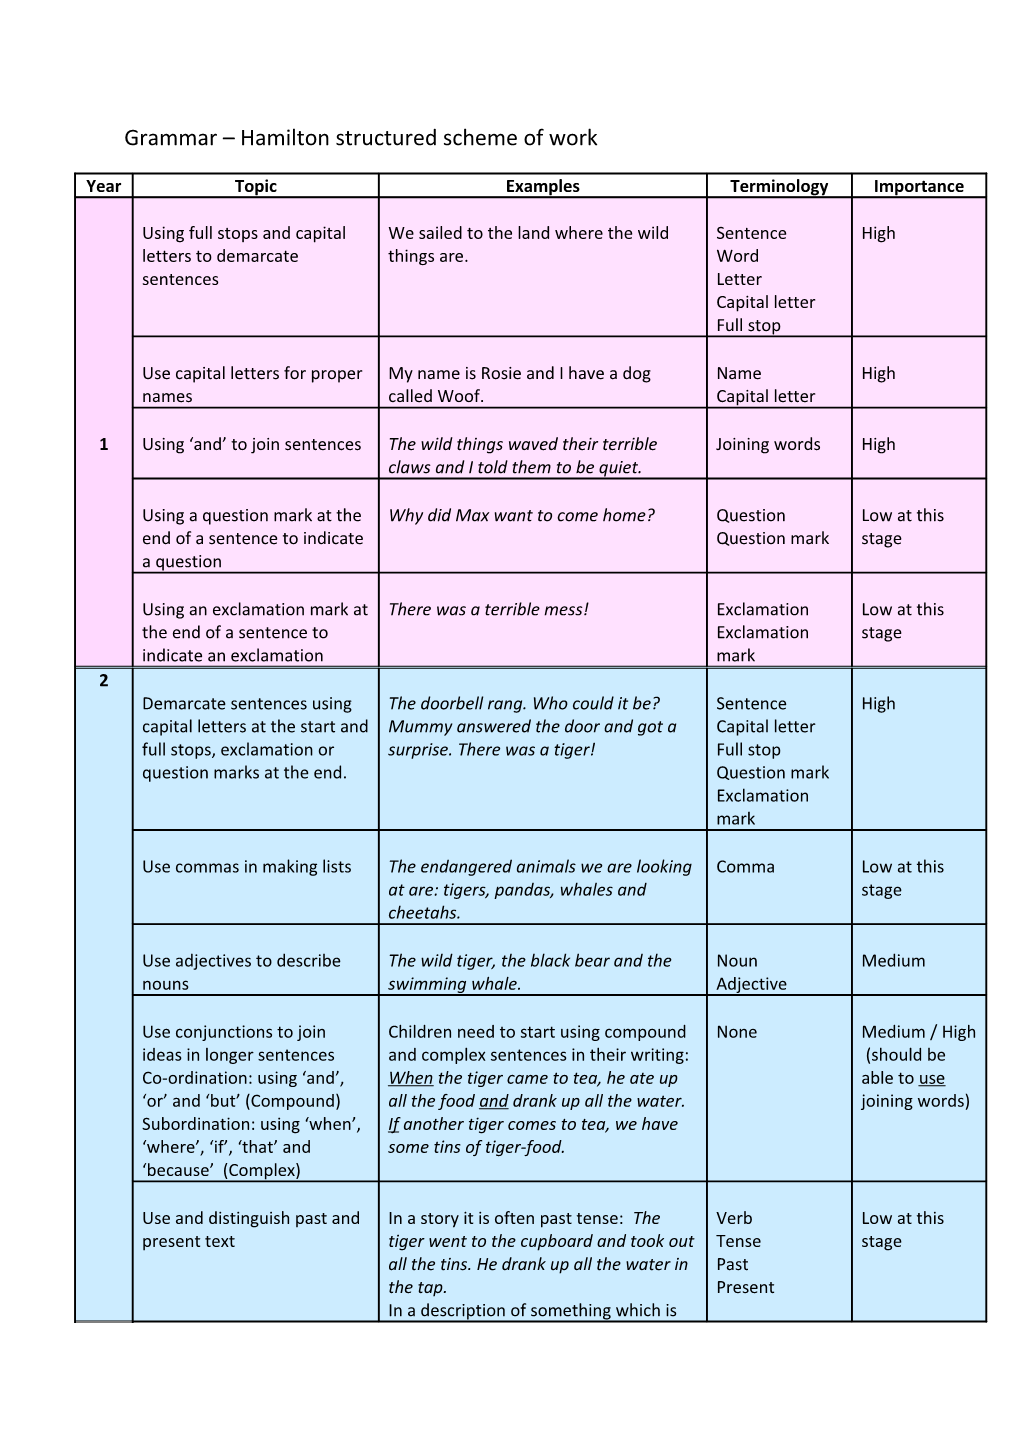 Grammar Hamilton Structured Scheme of Work s1